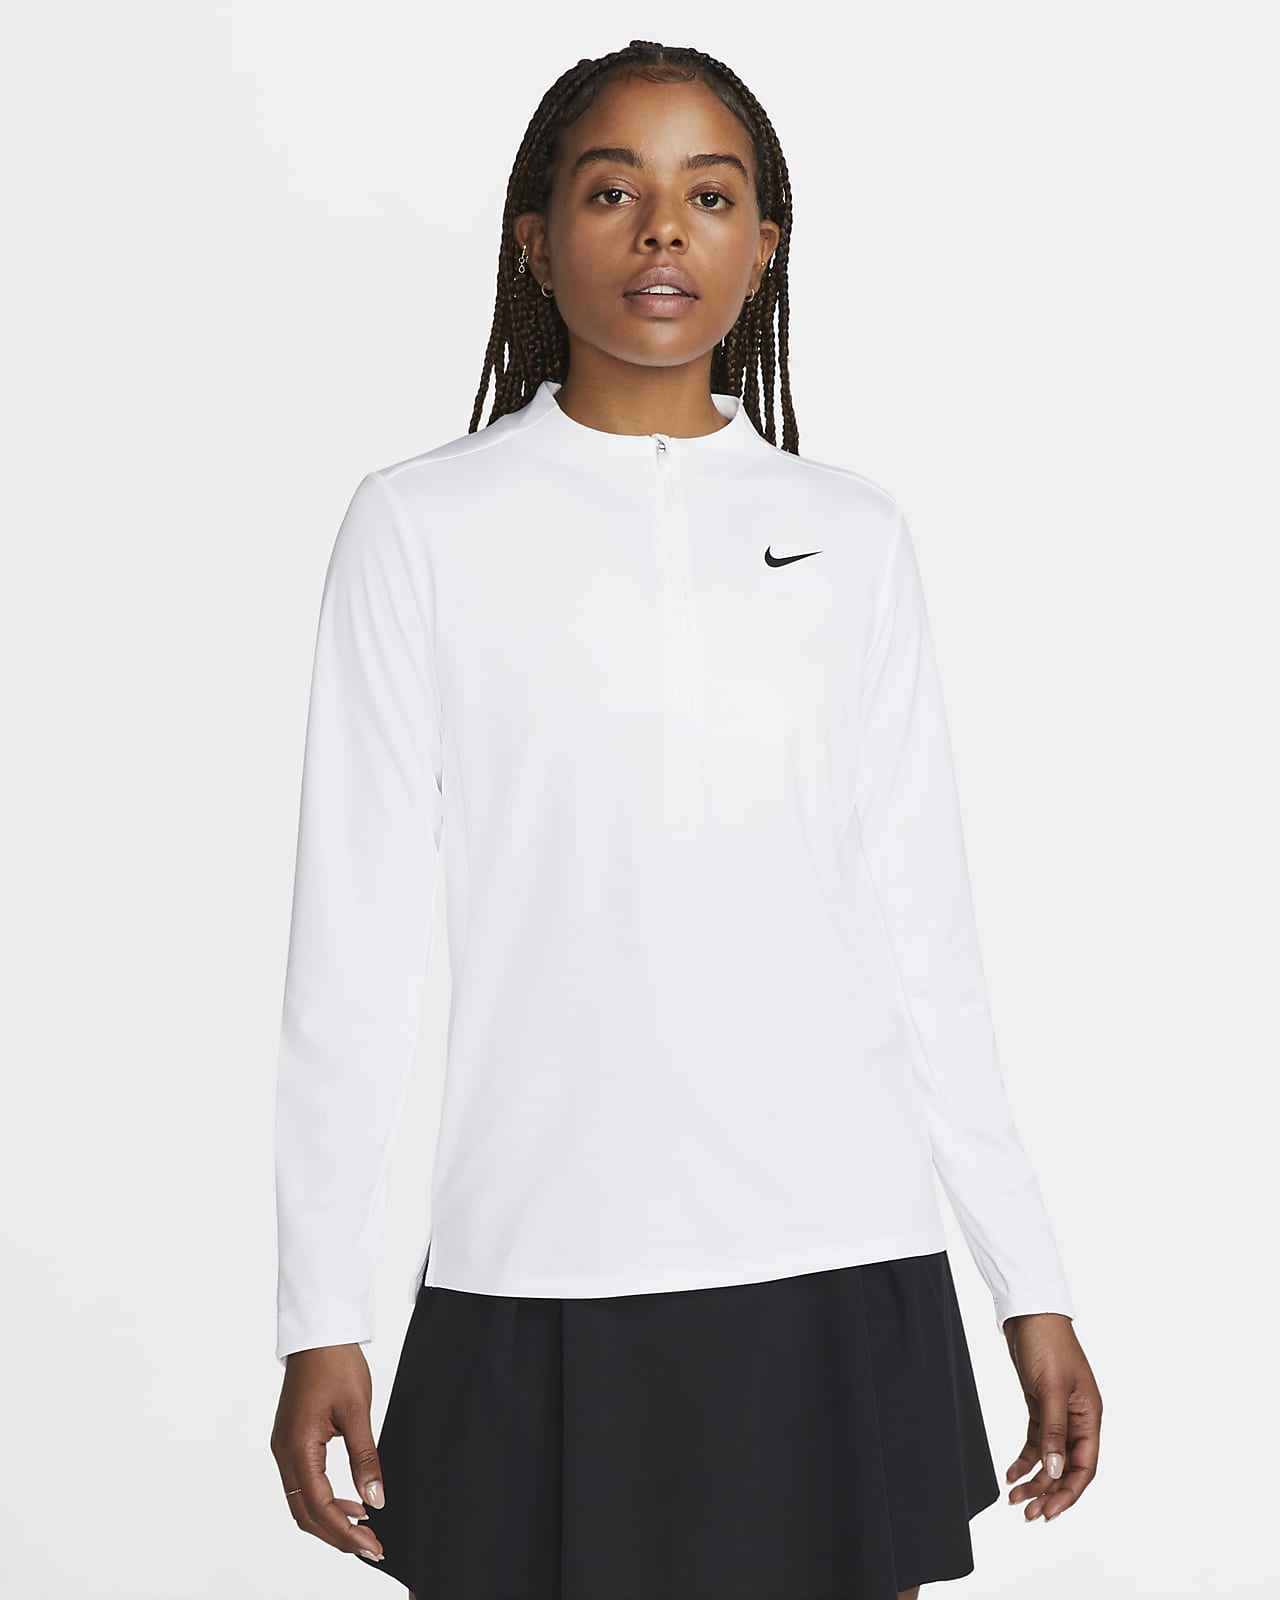 Γυναικεία μπλούζα με φερμουάρ στο μισό μήκος Nike Dri-FIT UV Advantage